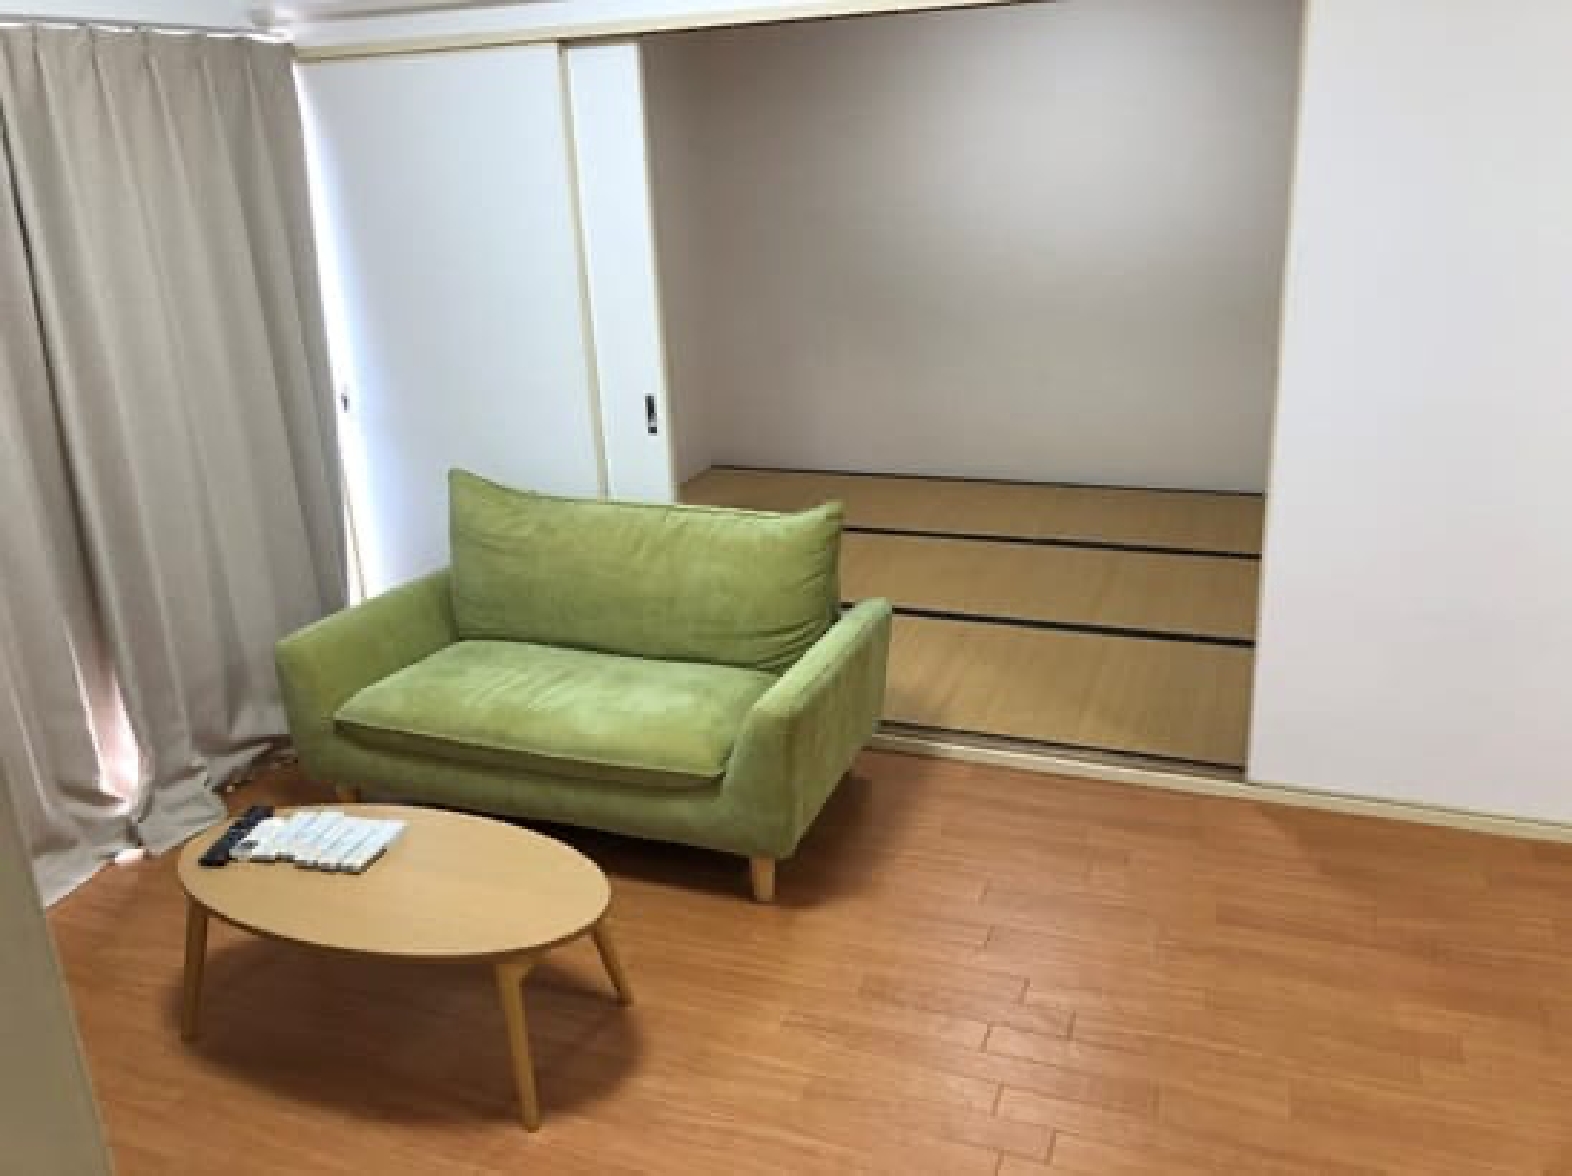 近畿大学奈良病院が提供する宿舎の部屋